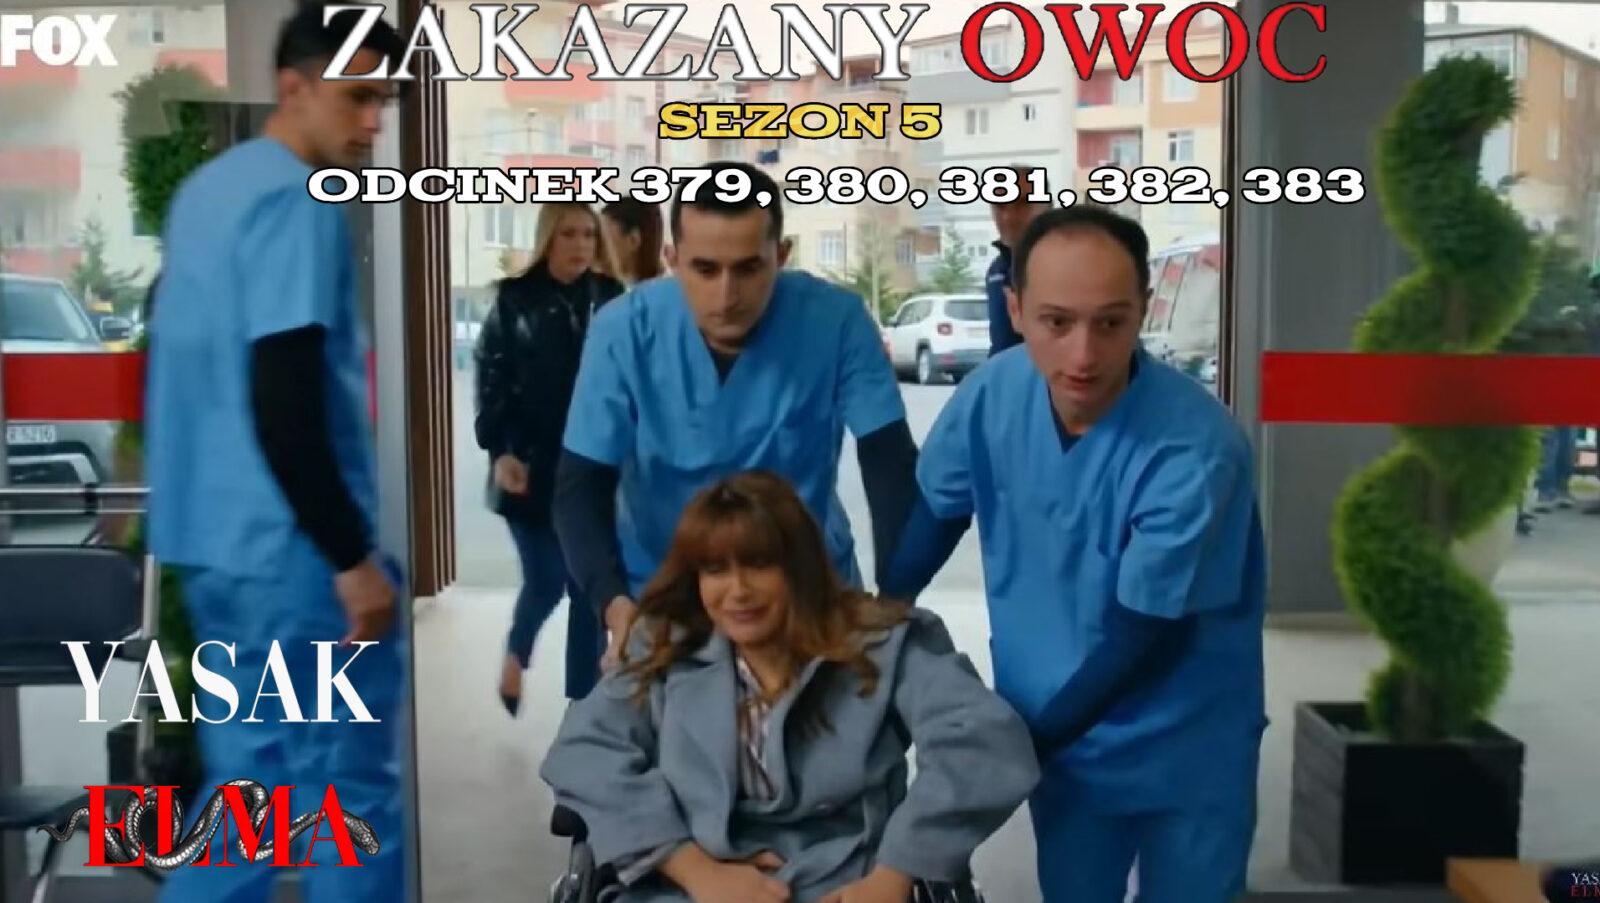 Zakazany Owoc odcinek 379, 380, 381, 382, 383 online ZA DARMO – Serial turecki ZAKAZANY OWOC na TVP VOD